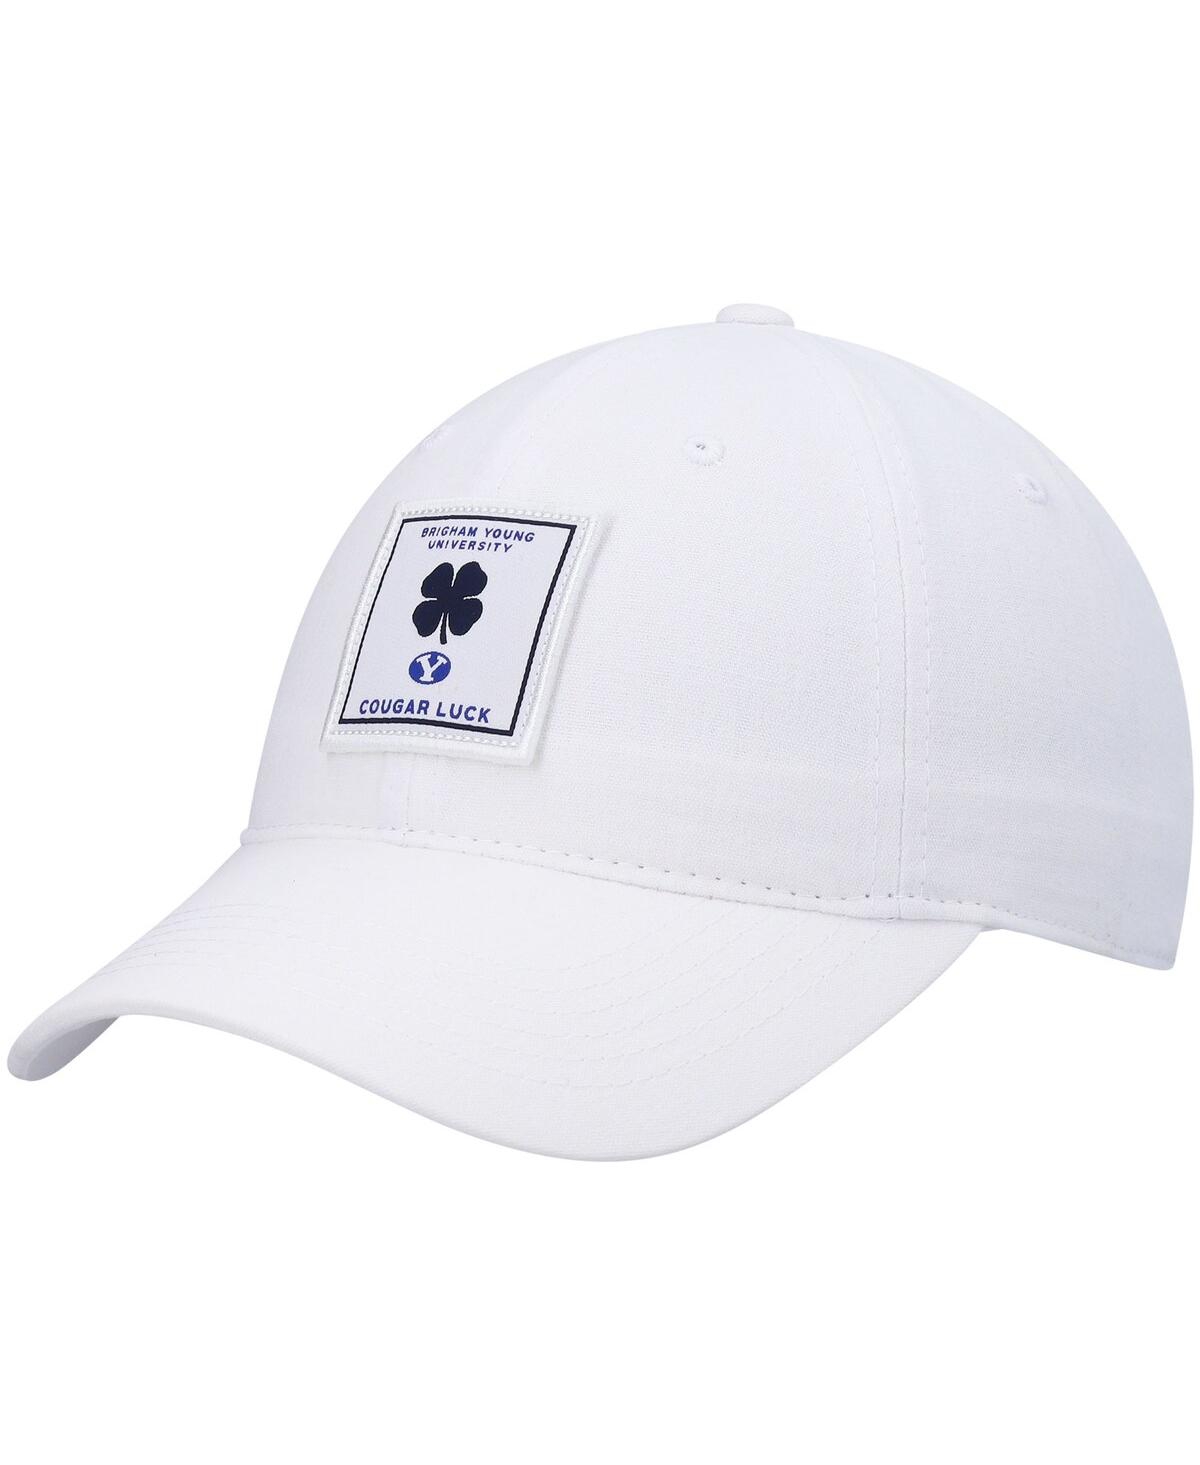 Shop Black Clover Men's White Byu Cougars Dream Adjustable Hat